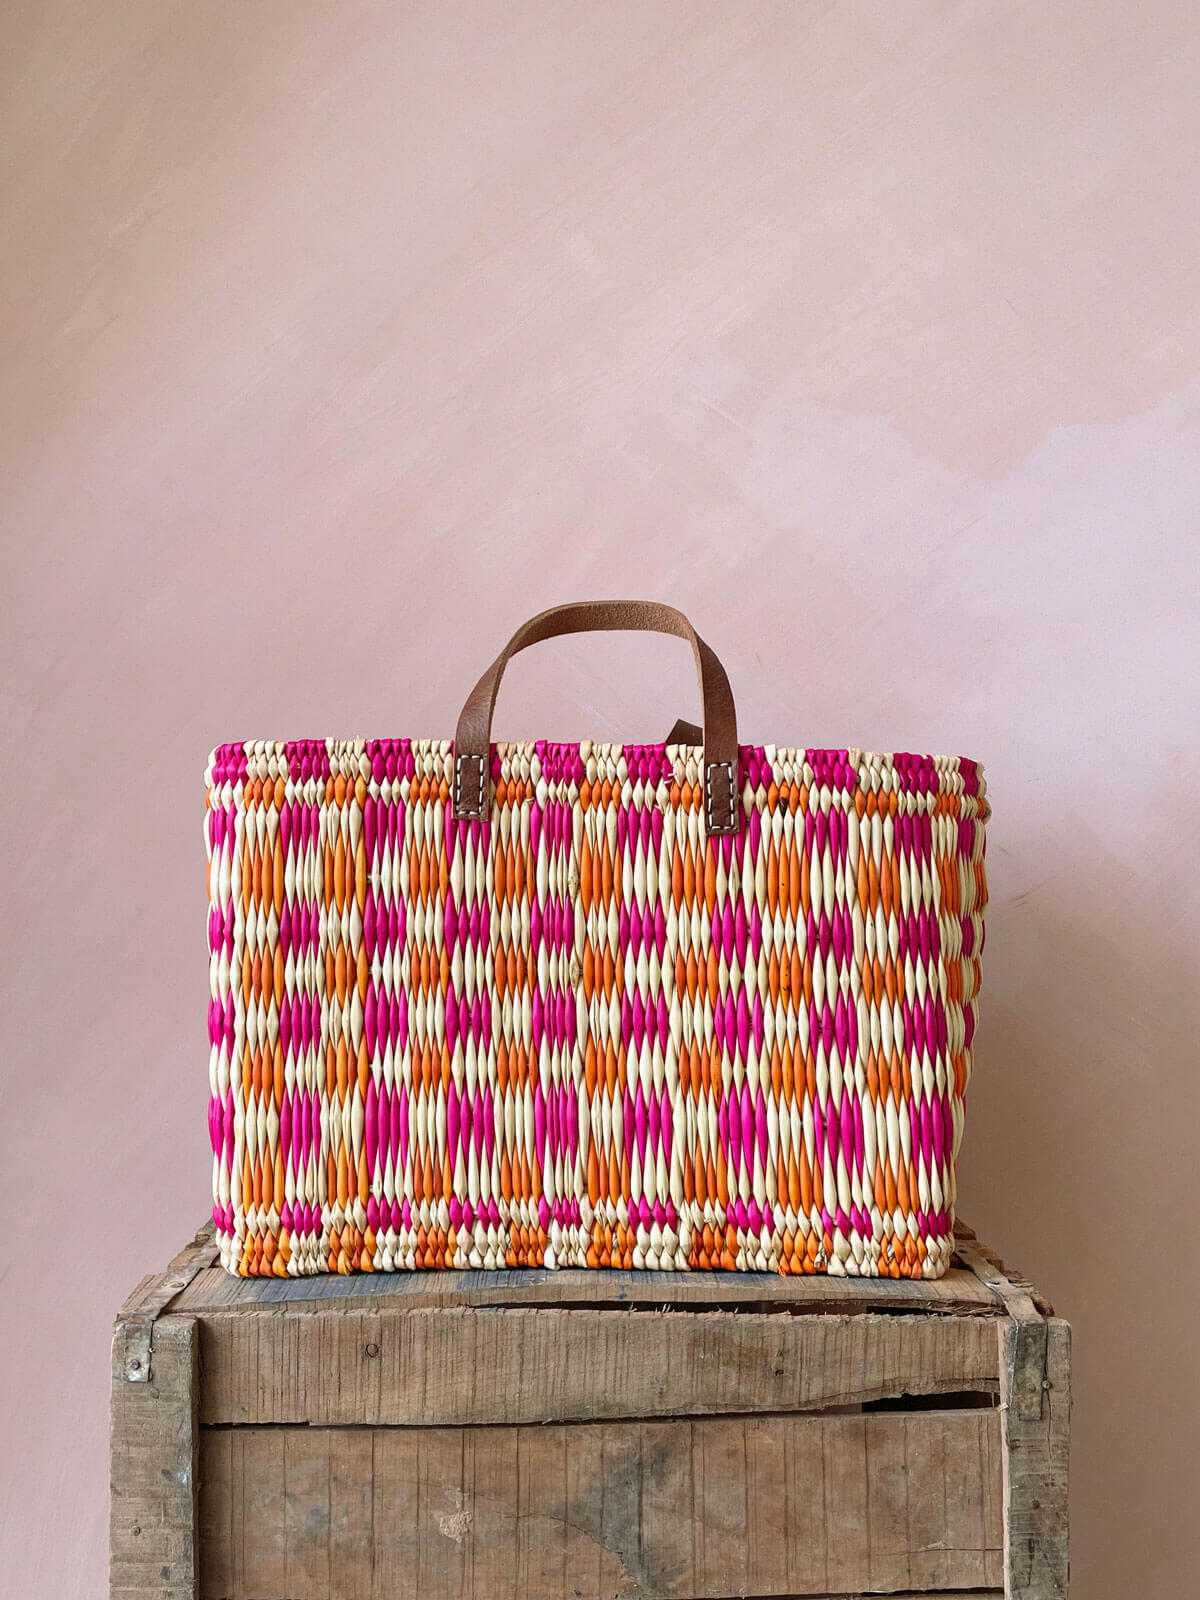 Chequered Reed Basket, Pink + Orange